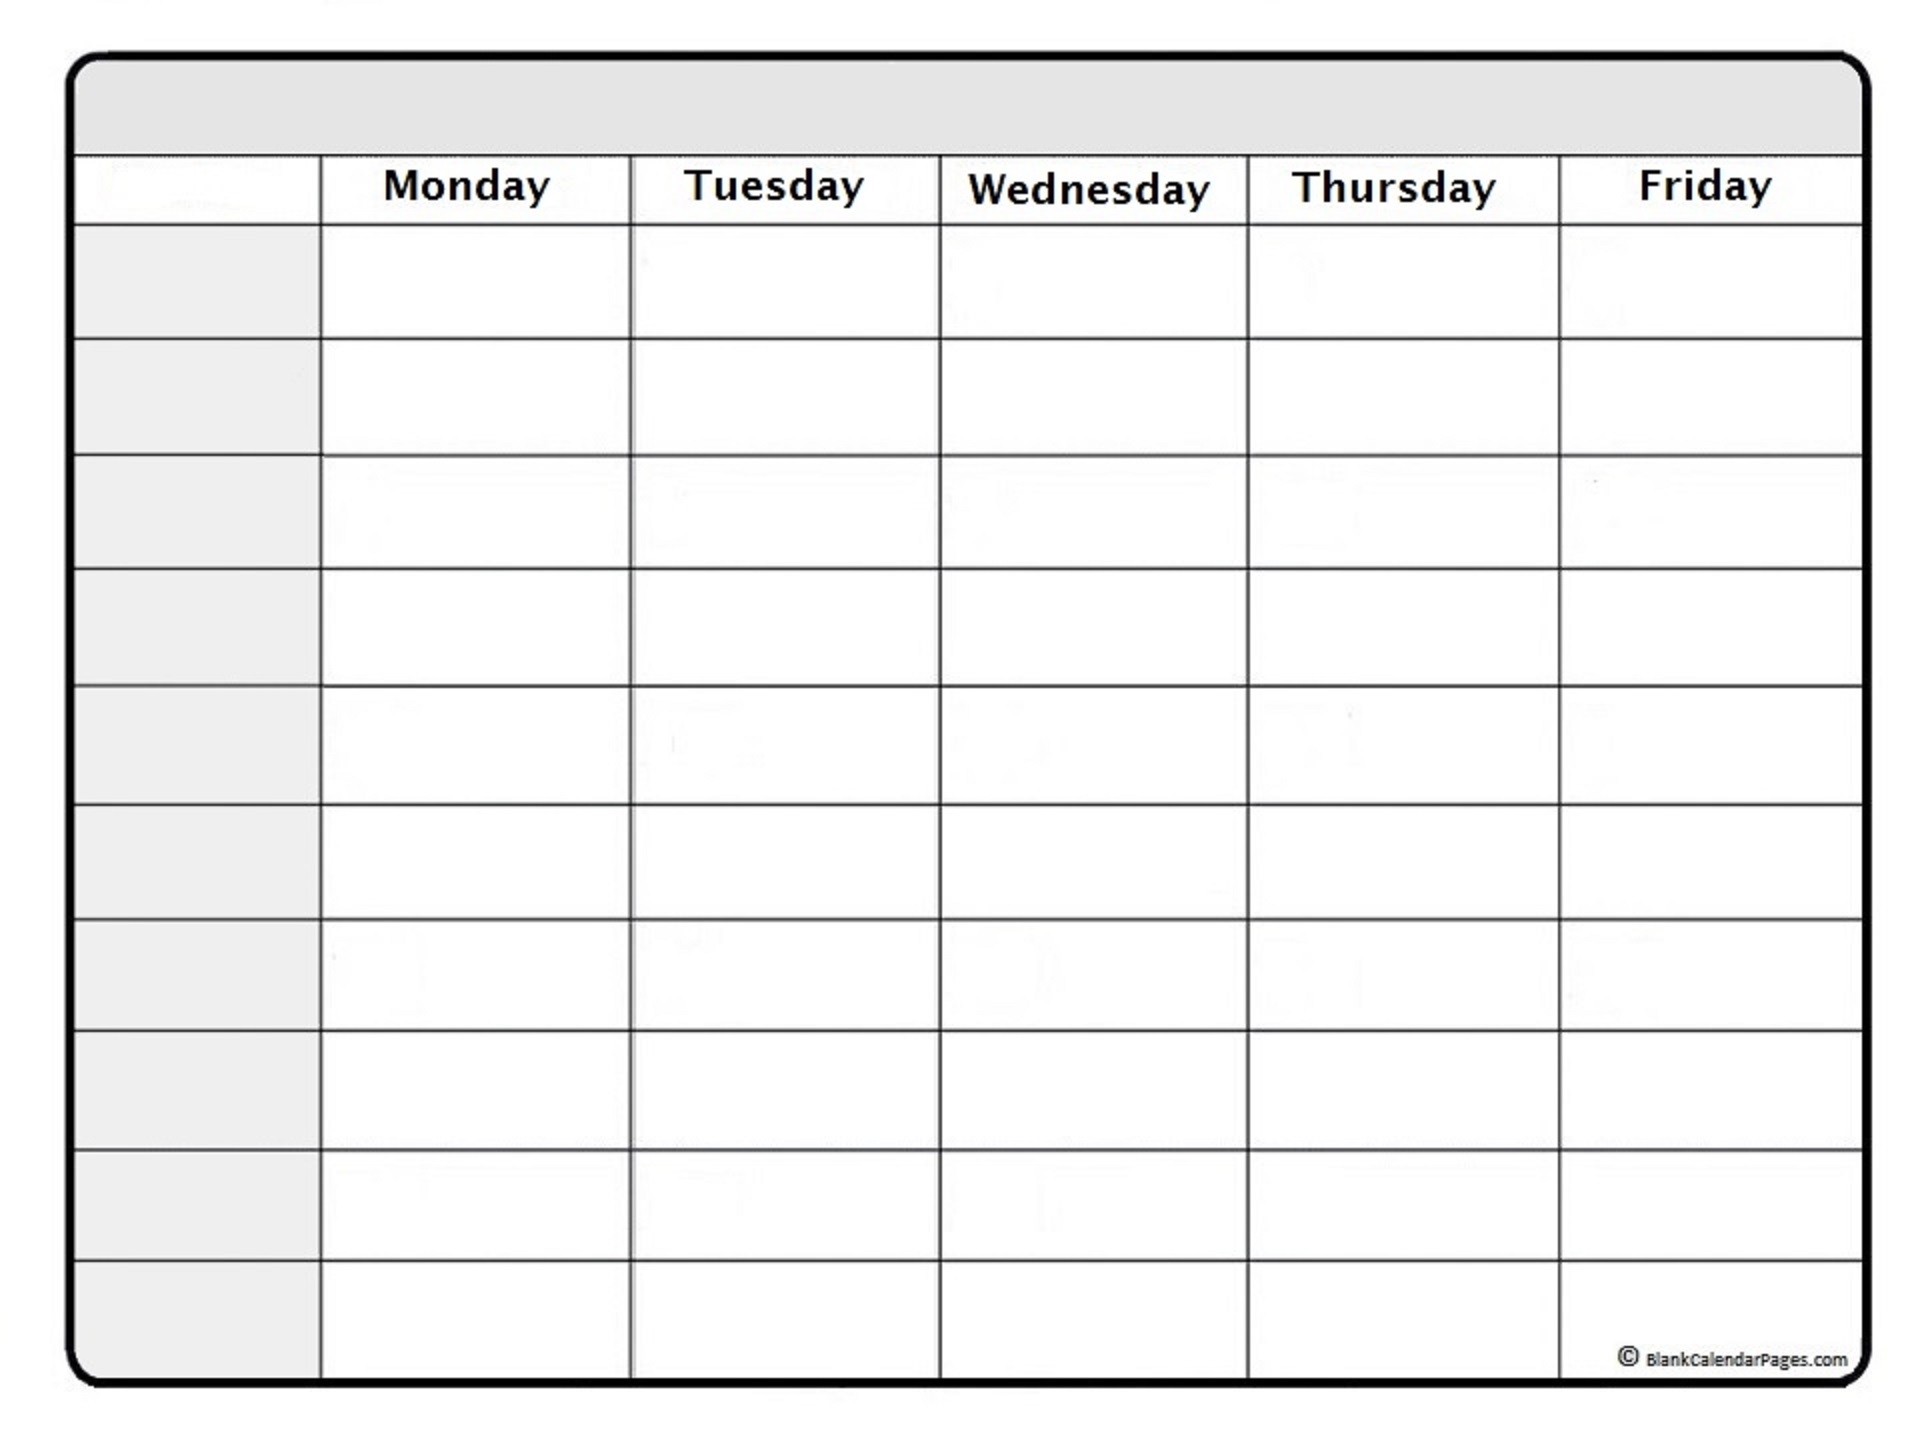 May 2019 Weekly Calendar | May 2019 Weekly Calendar Template inside Week Printable Calendar With Lines